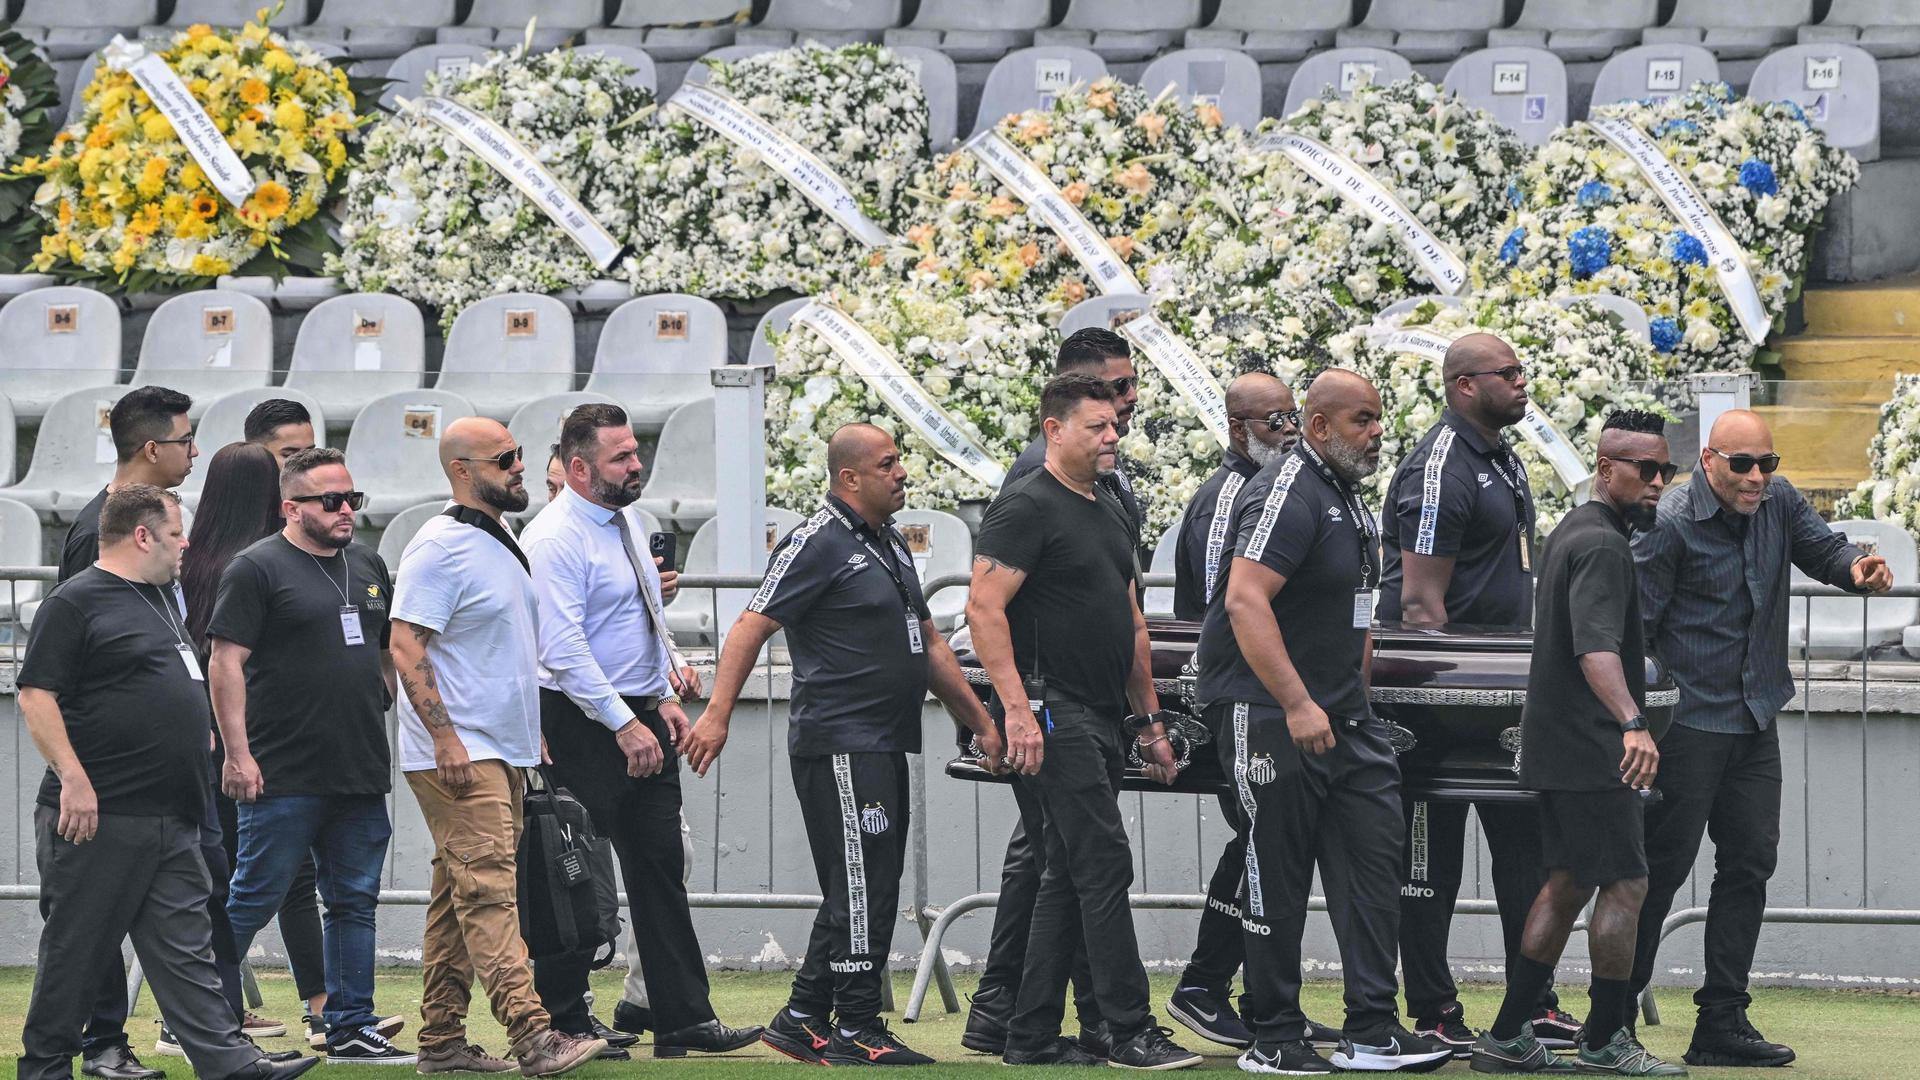 Adeptos e admiradores de Pelé despedem-se do "rei" no estádio Vila Belmiro, onde foi colocada a sua urna, para as últimas homenagens.